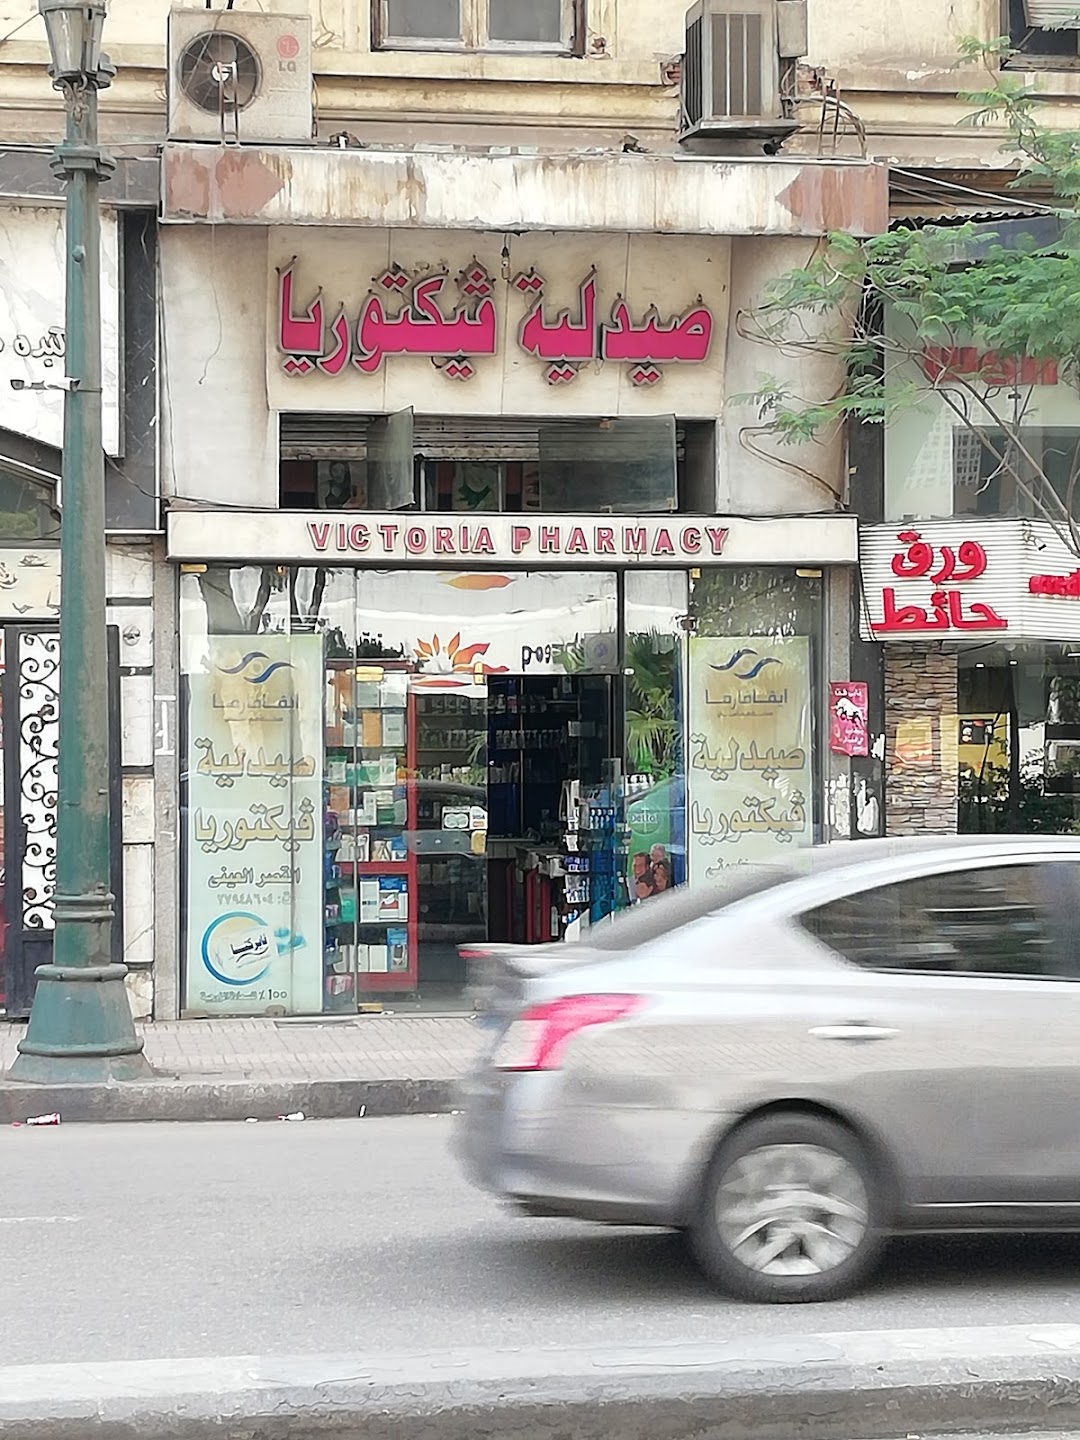 Victoria Pharmacy